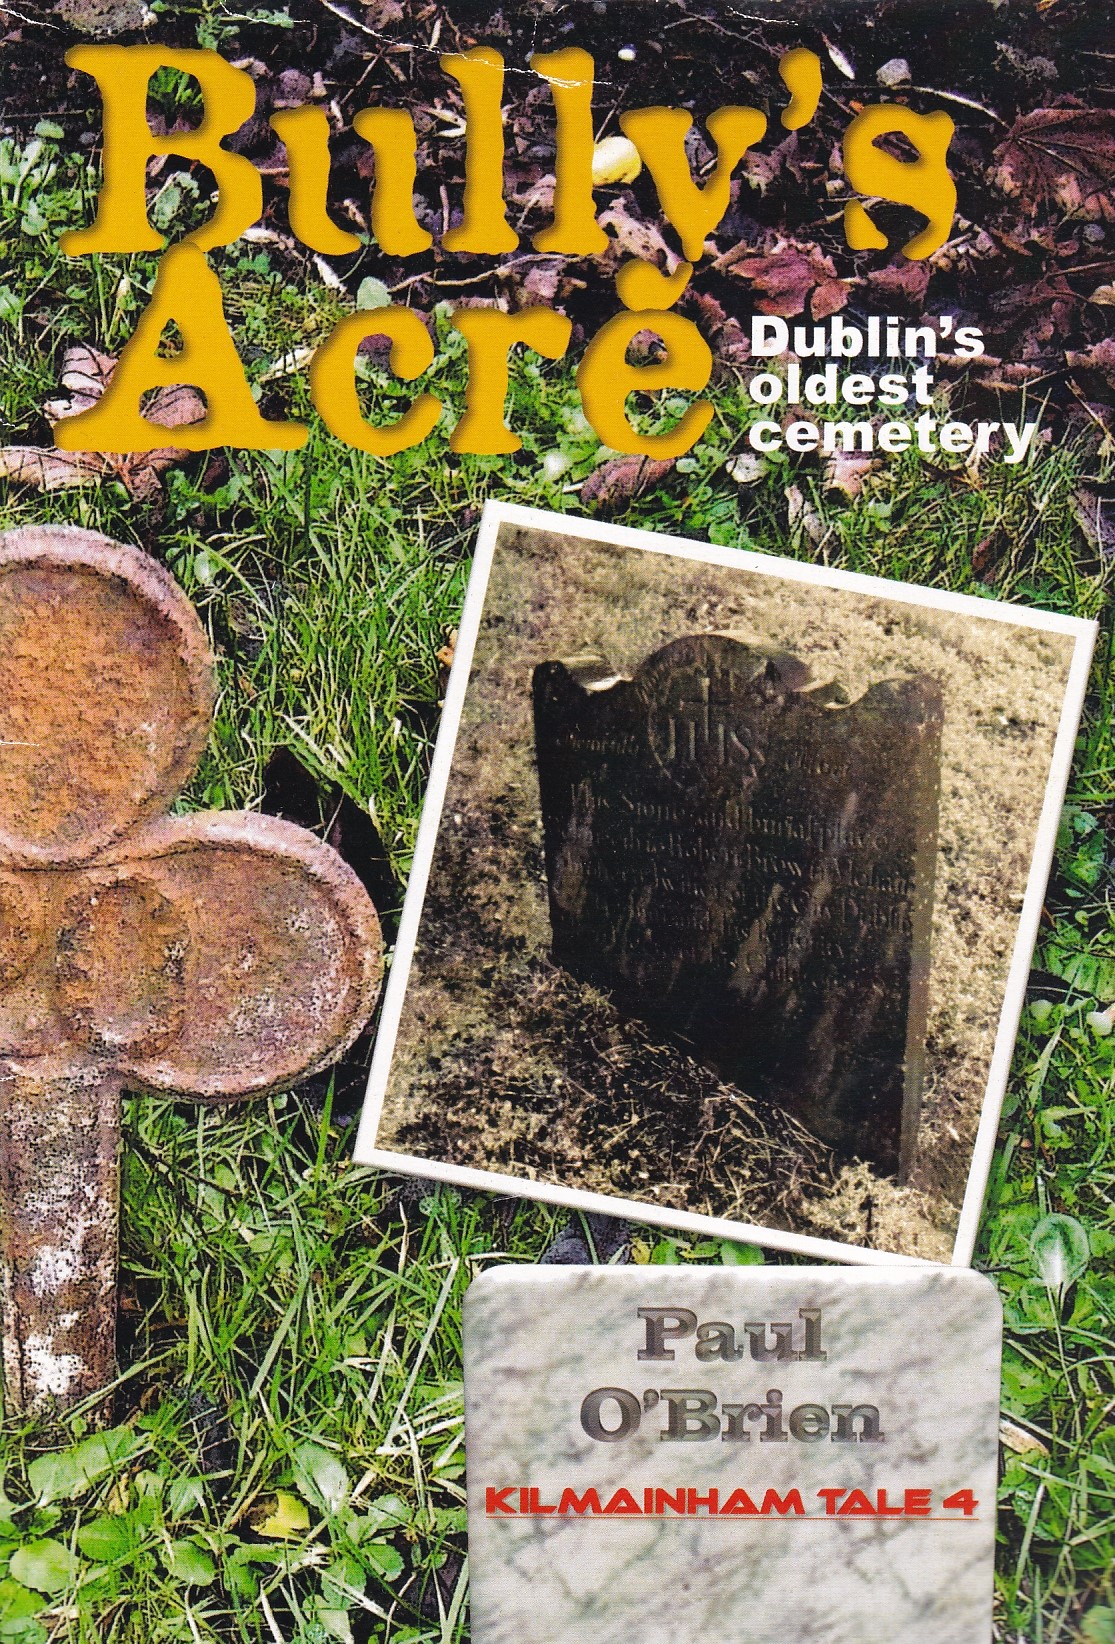 Bully’s Acre: Dublin’s Oldest Cemetery | Paul O'Brien | Charlie Byrne's